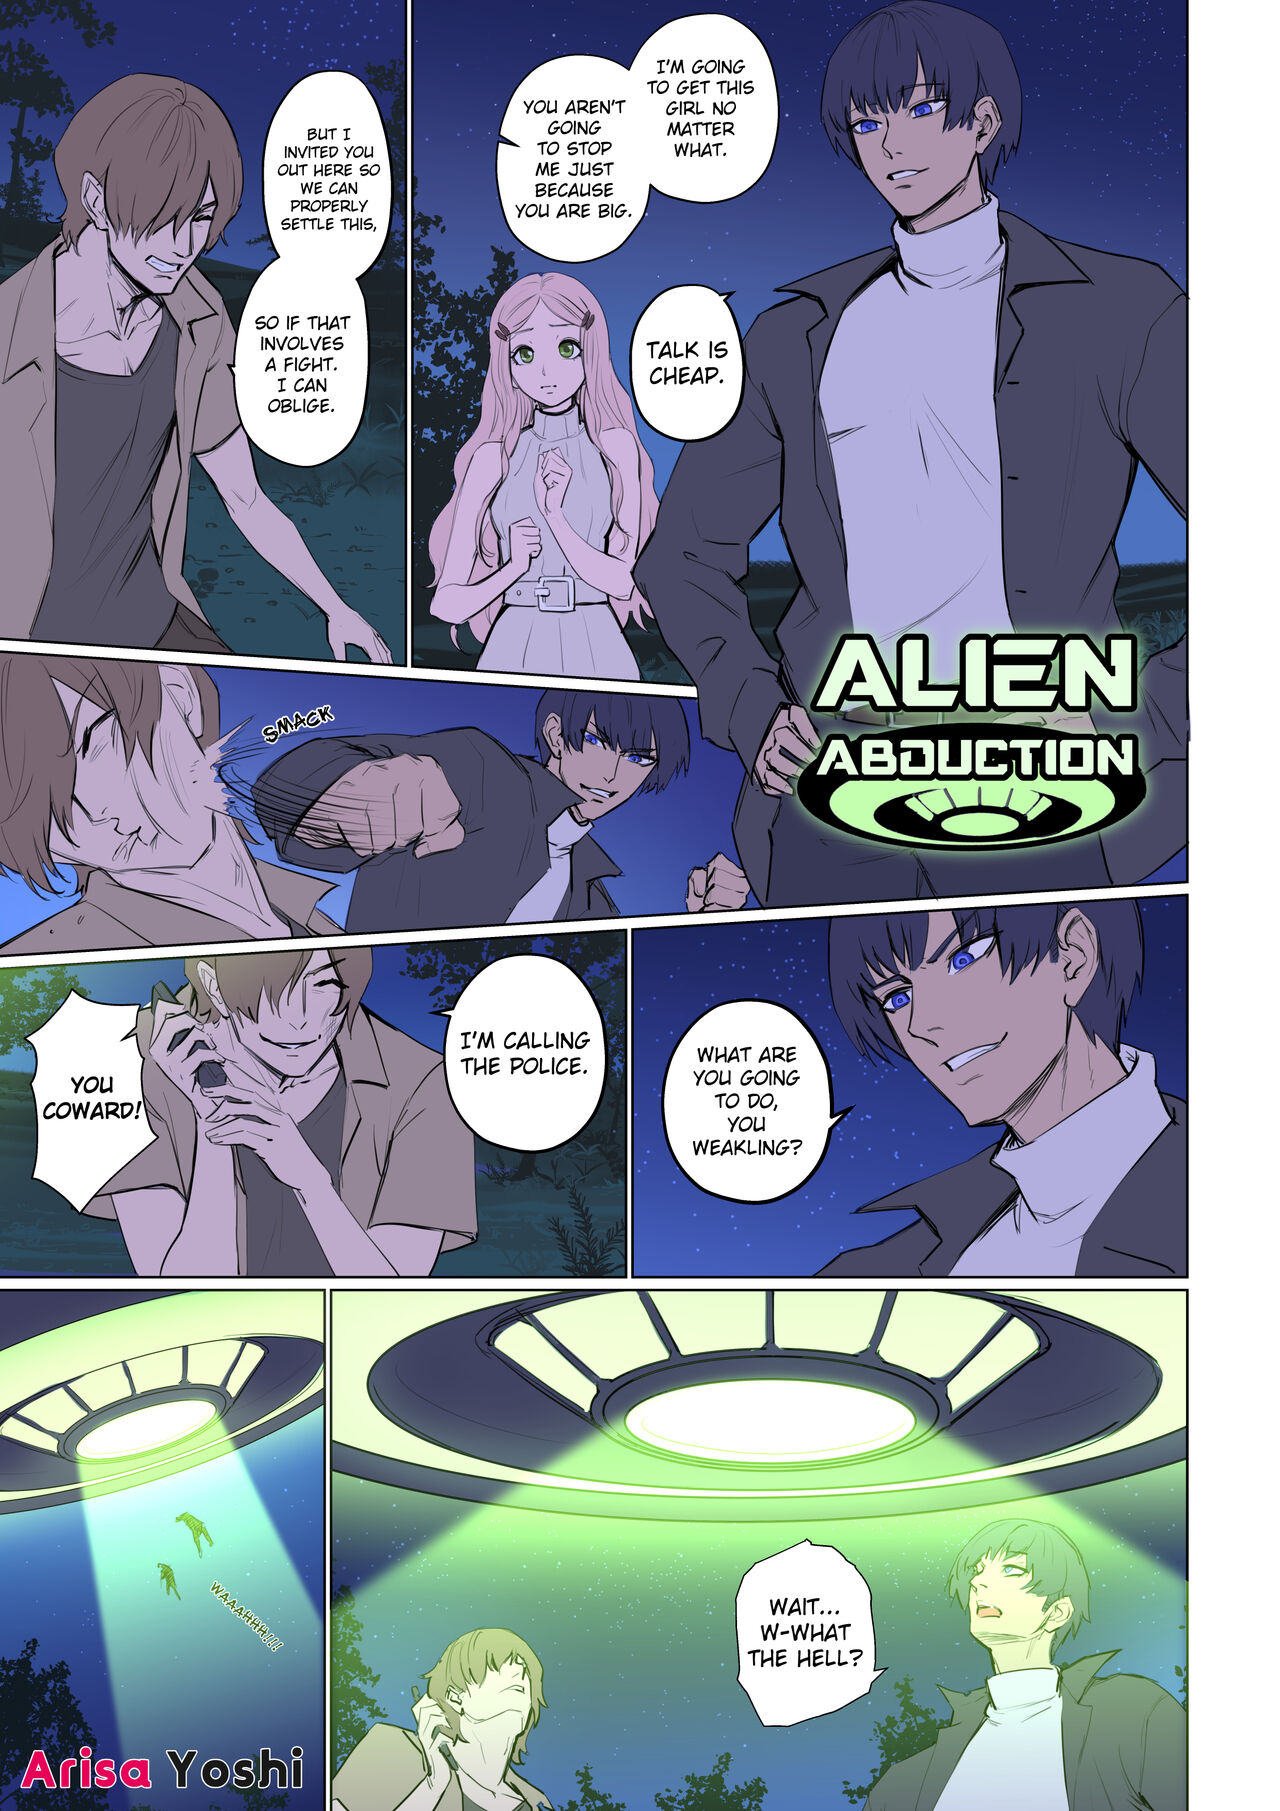 Alien abduction porn comics